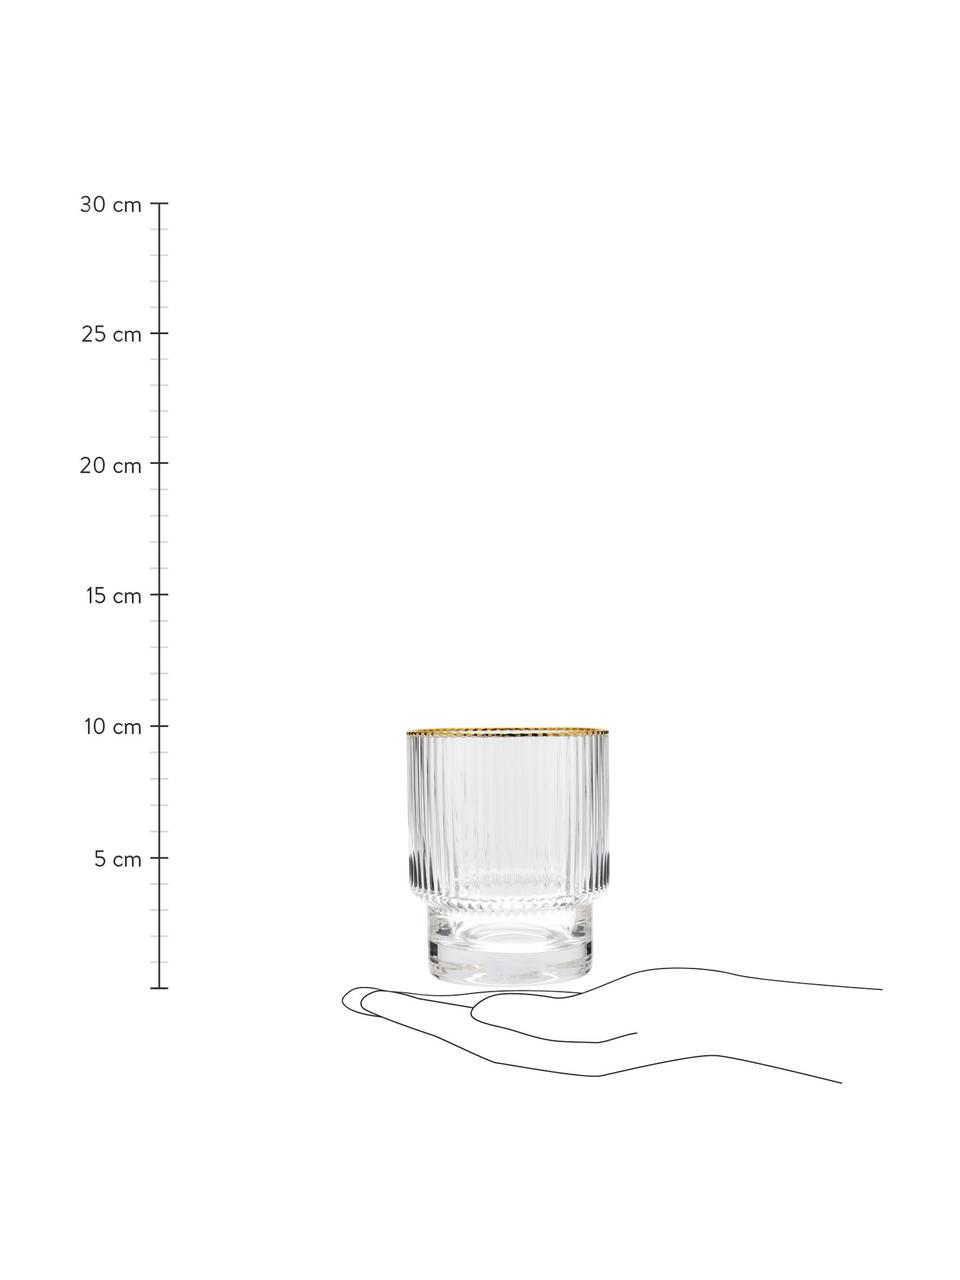 Bicchiere acqua fatto a mano con rilievo scanalato e bordo dorato Minna 4 pz, Vetro soffiato, Trasparente, Ø 8 x Alt. 10 cm